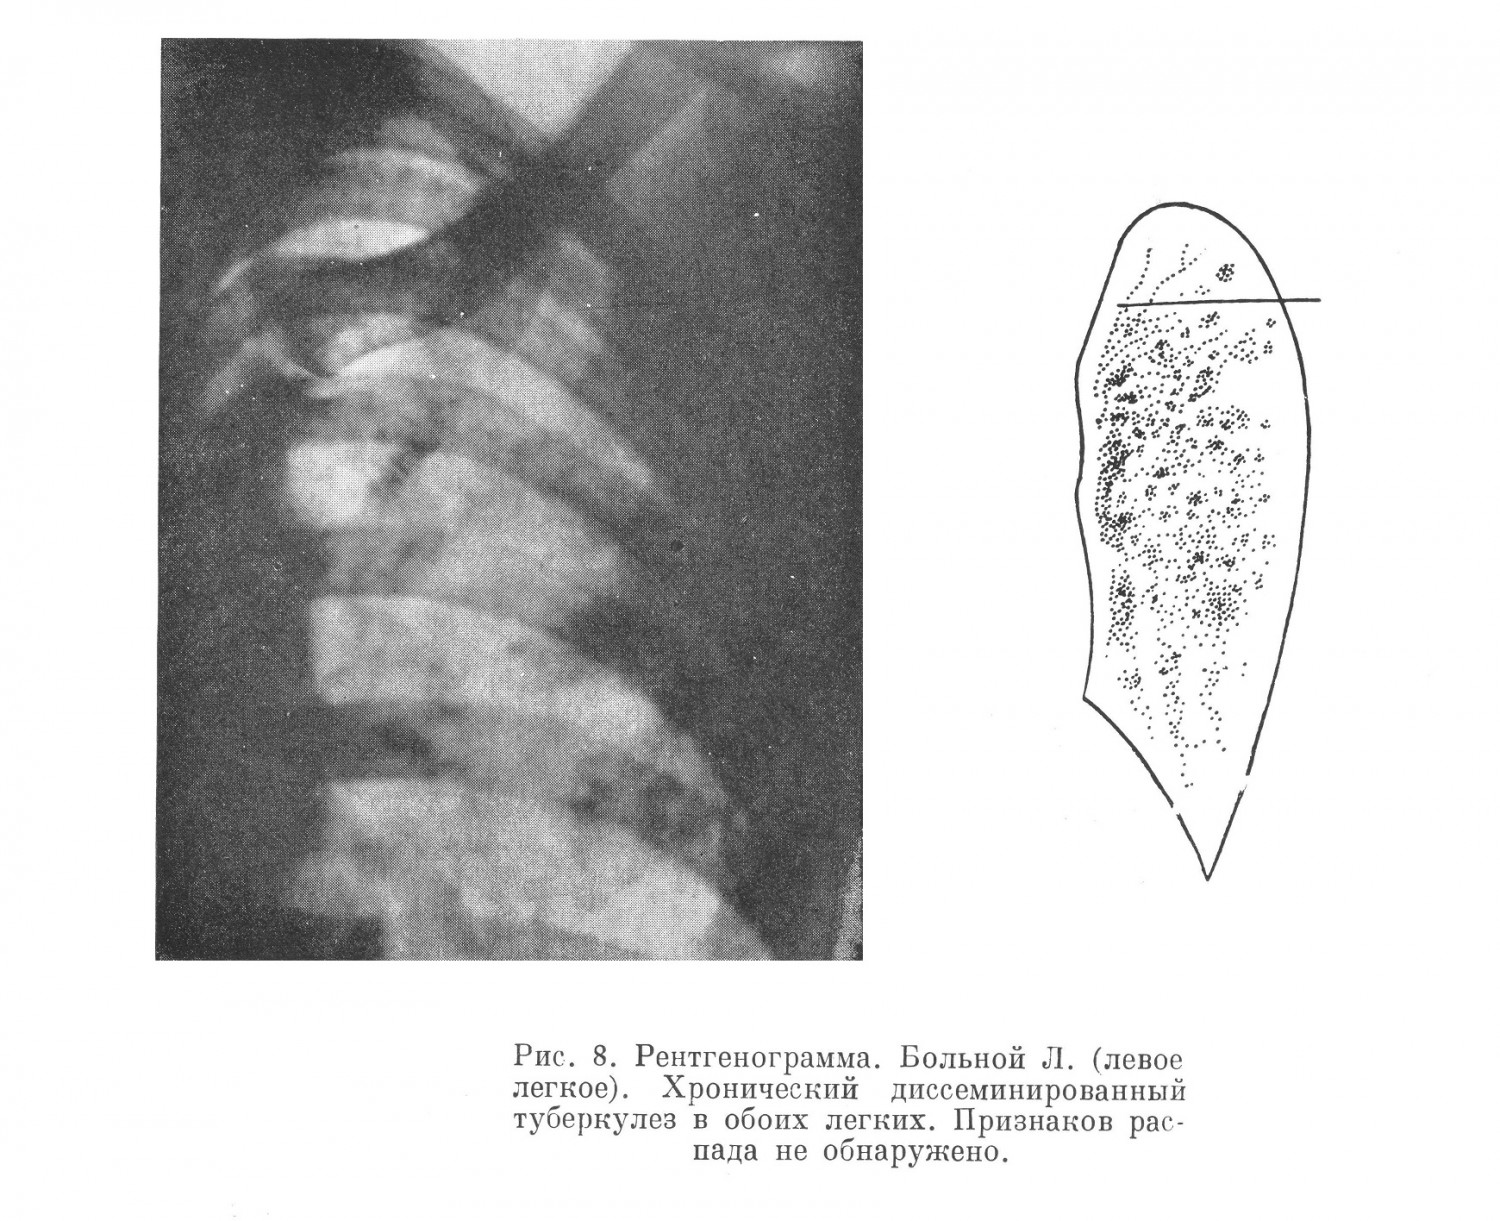 При рентгенологическом обследовании выявлен двусторонний диссеминированный туберкулез